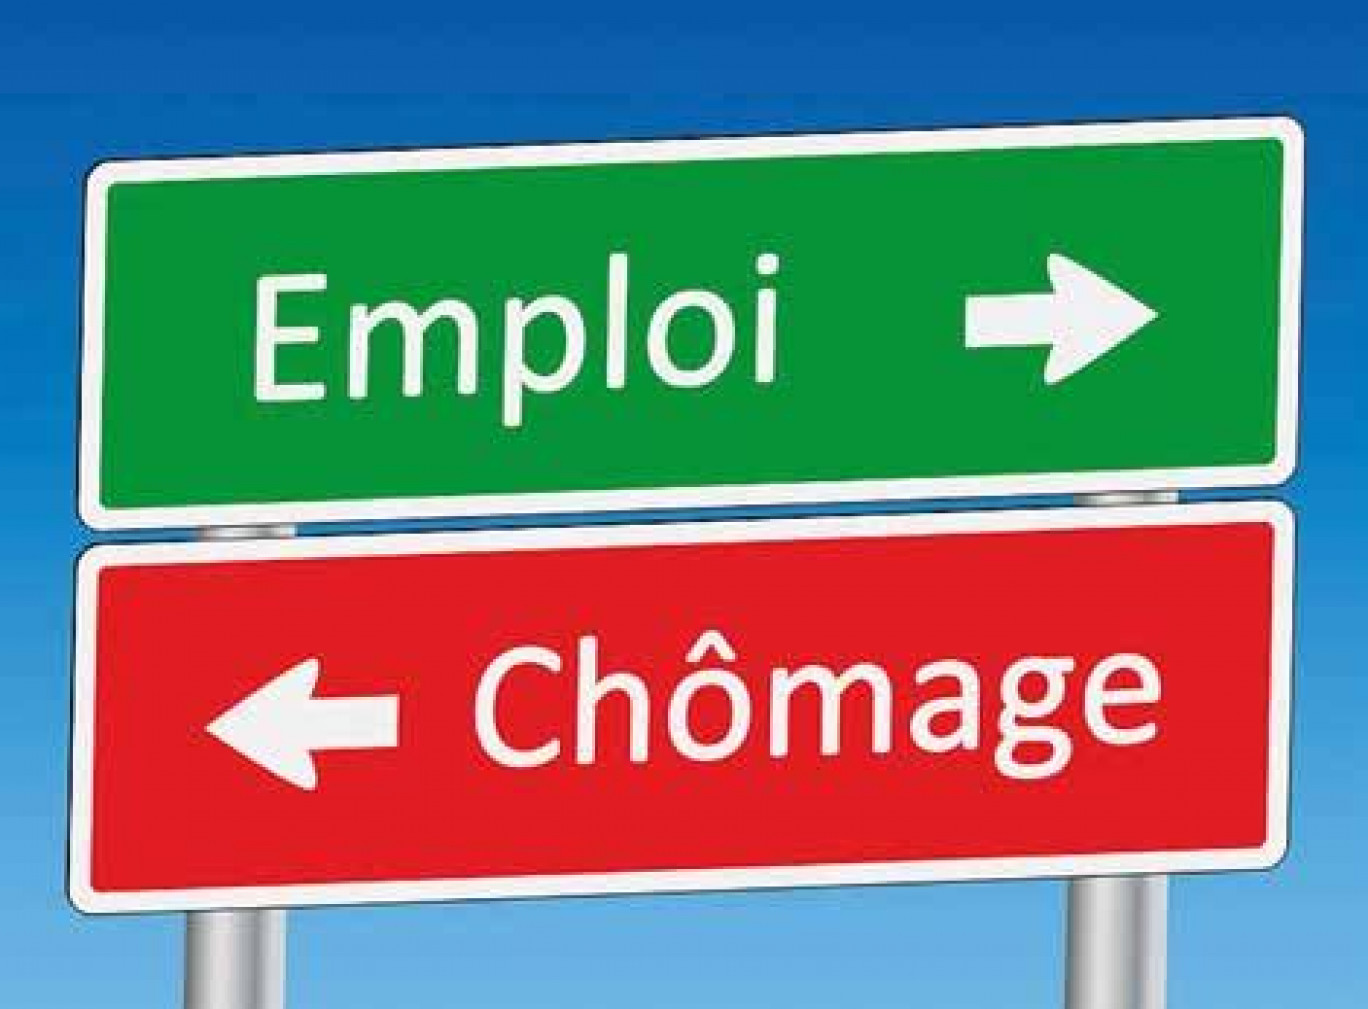 Les formes particulières d'emploi forment un maillon essentiel de la flexibilité du marché du travail